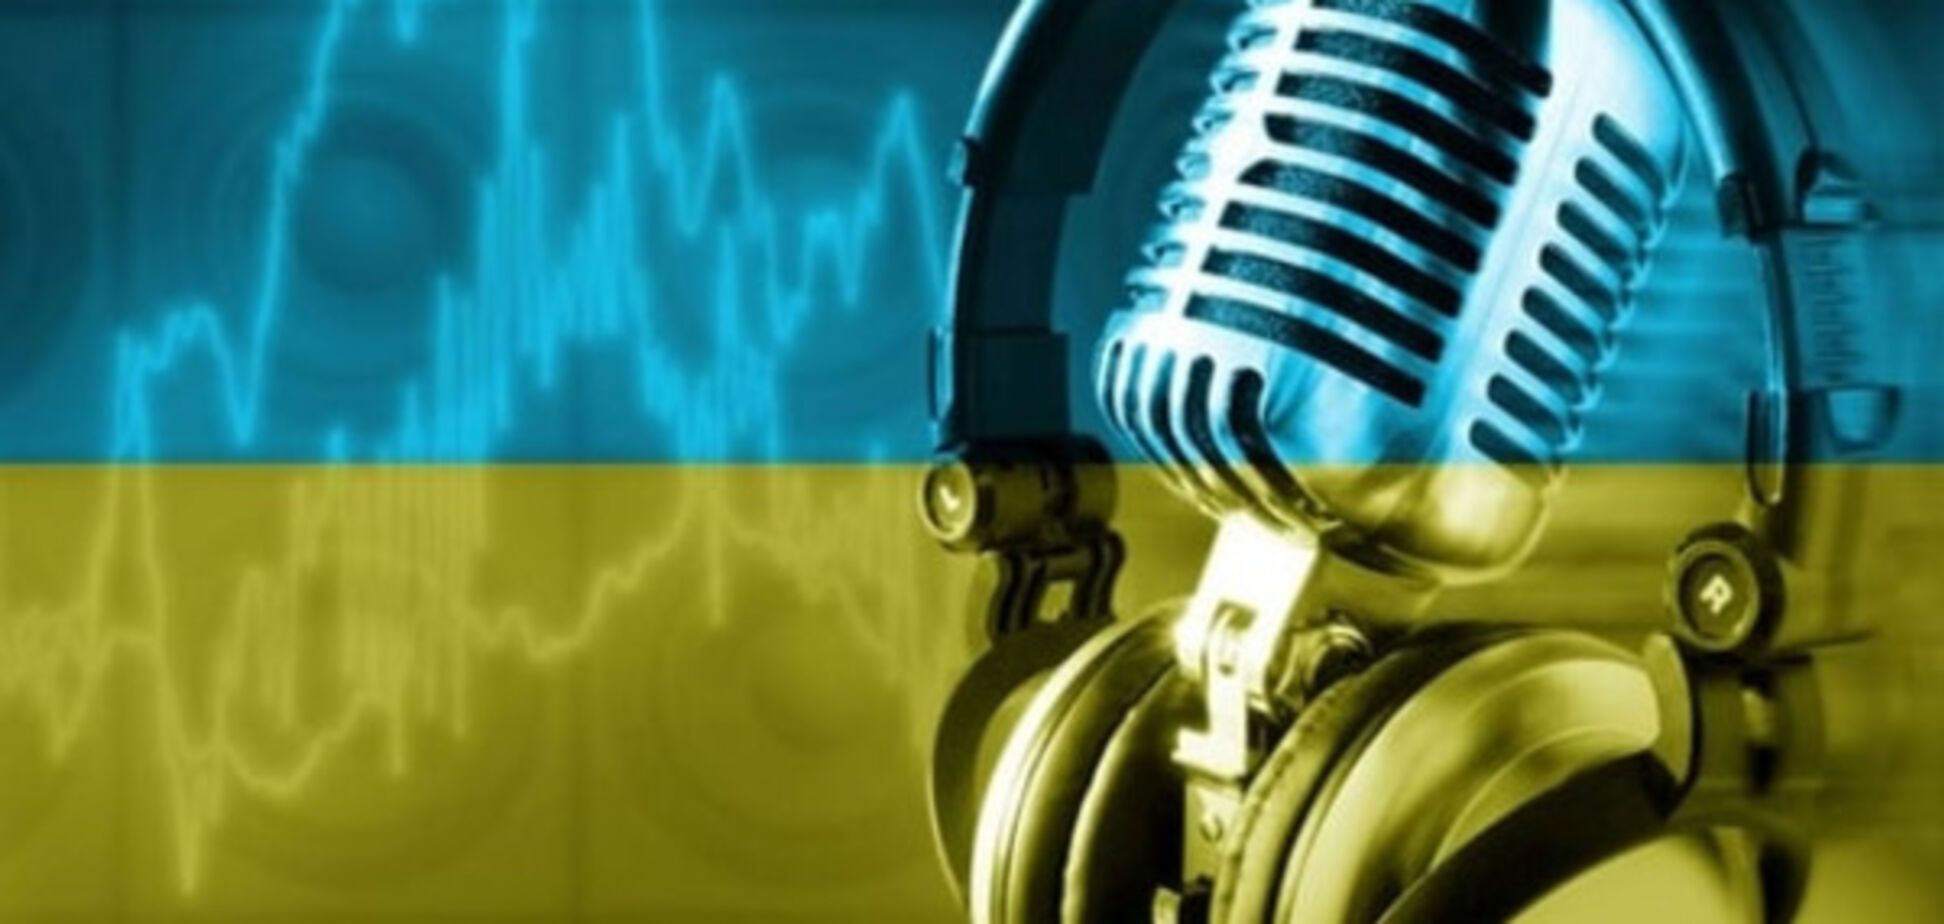 Украинская музыка